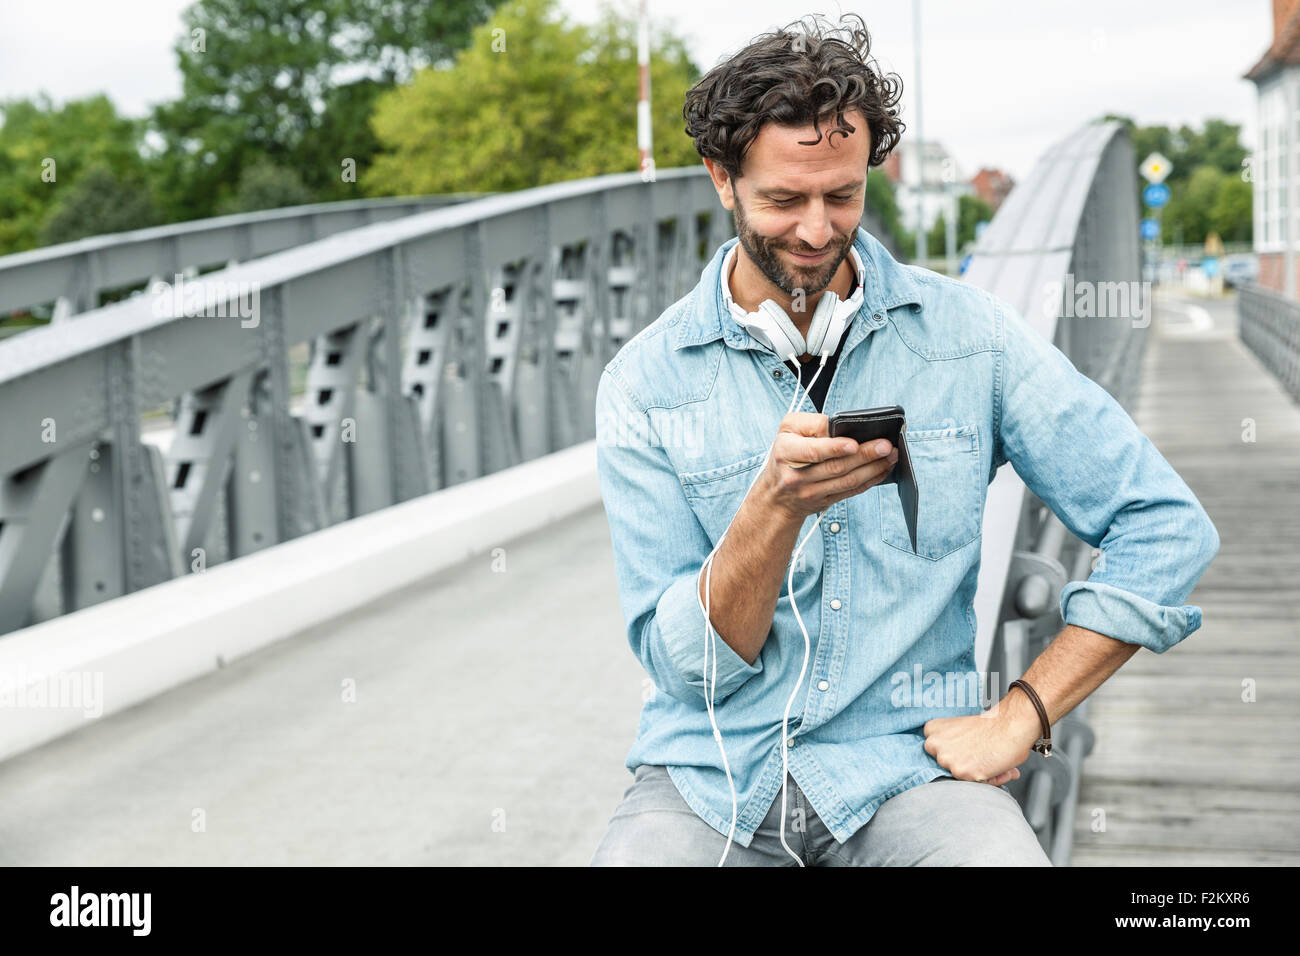 Lächelnder Mann auf einer Brücke Blick auf Handy Stockfoto